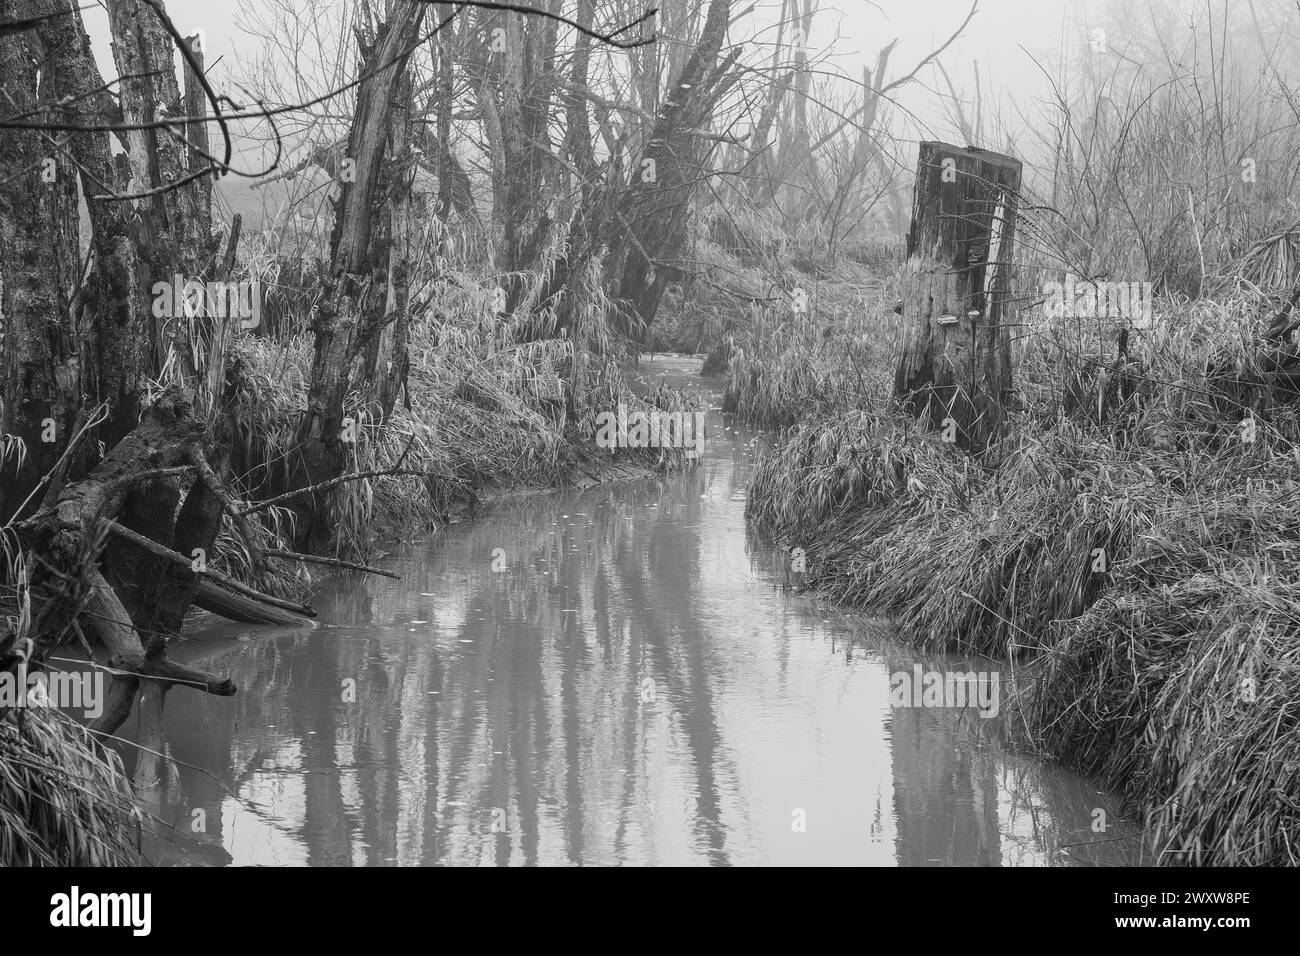 Das Schwarzweiß-Bild zeigt einen Bach mit toten Bäumen und Nebel, eine düstere Szene voller Einsamkeit und Verfall. Stockfoto